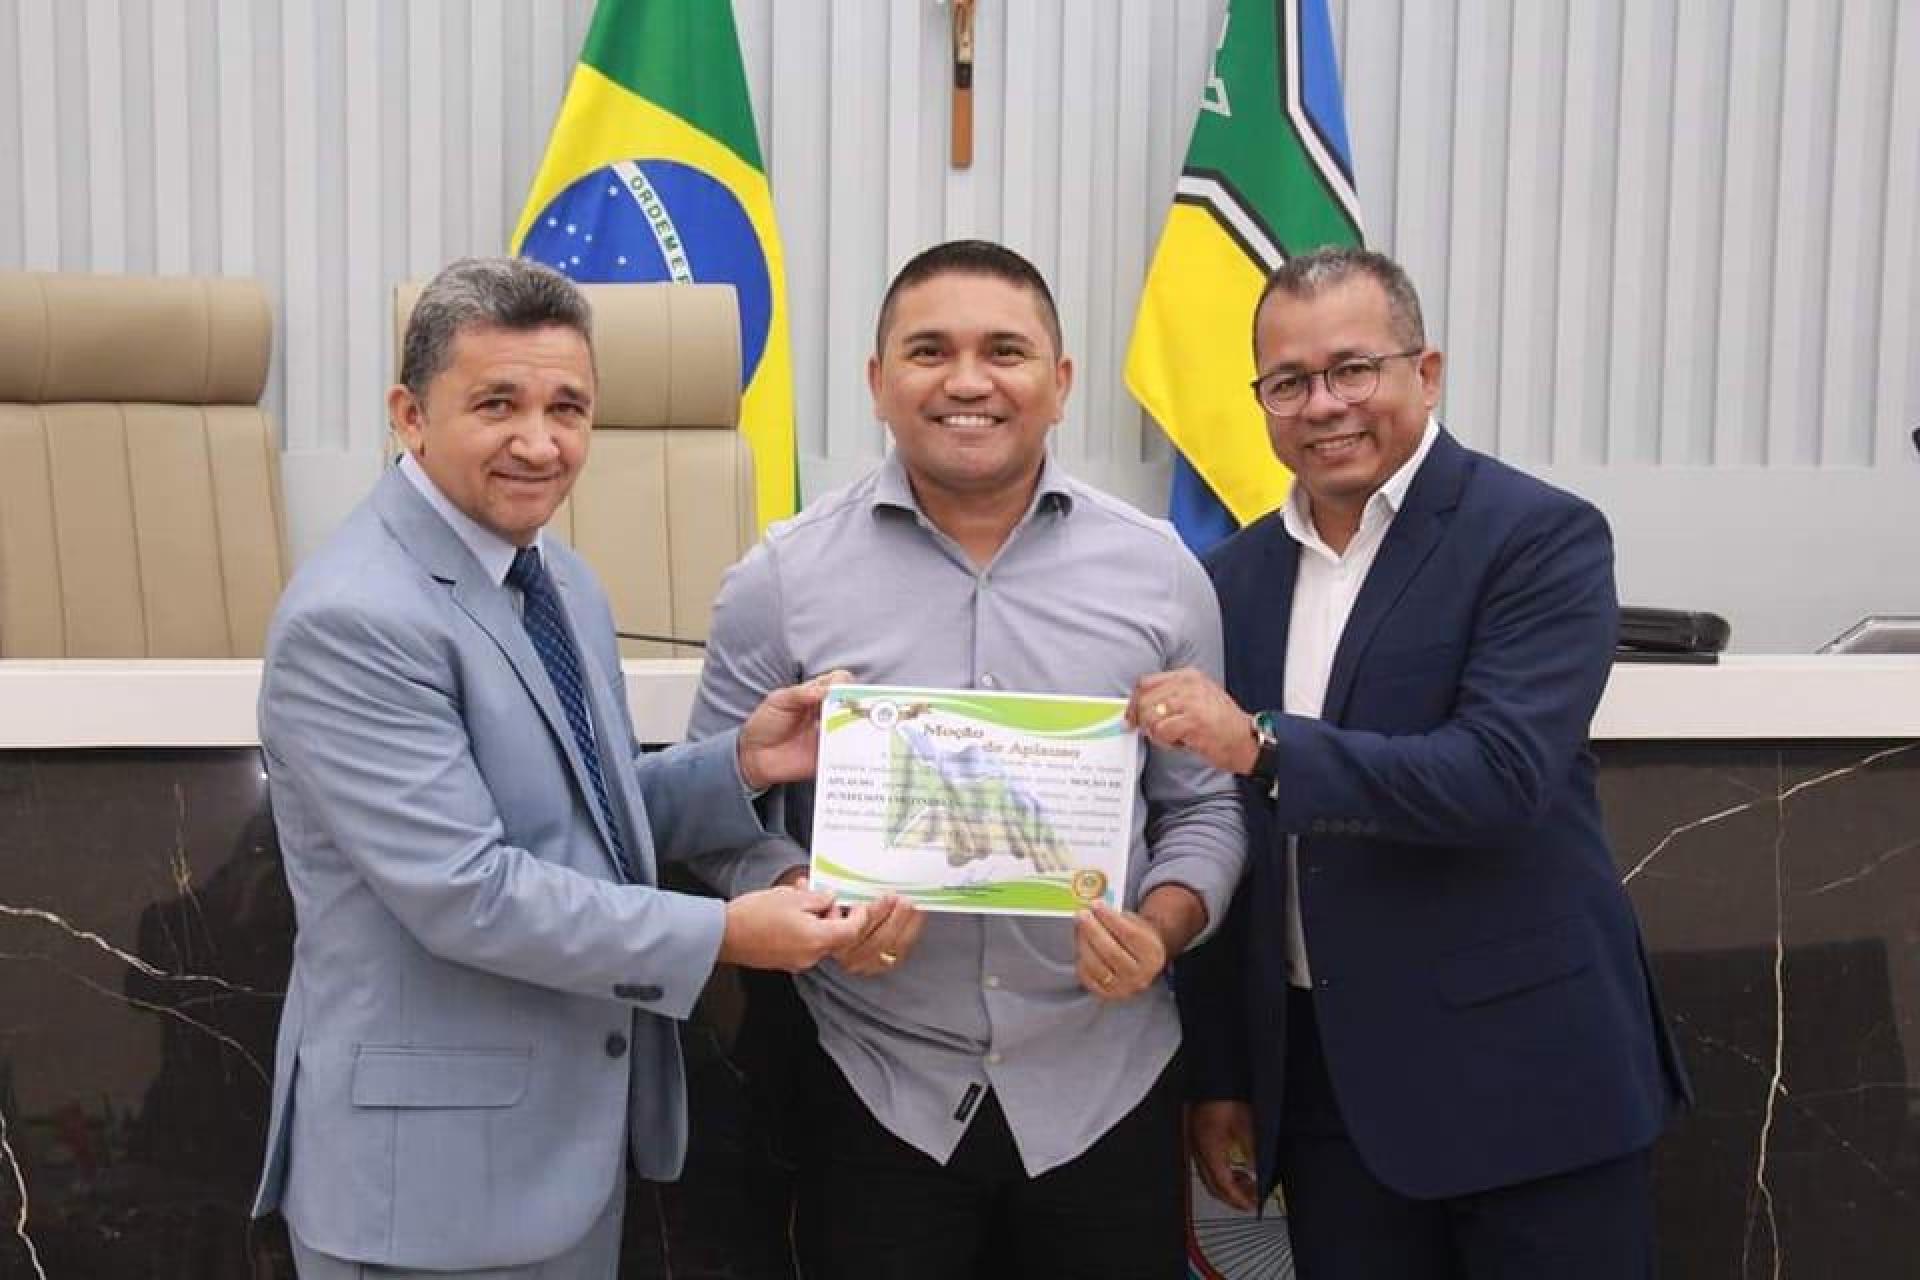 Coordenador de Desporto do Grupo Madre Tereza é homenageado por contribuição ao esporte no Amapá